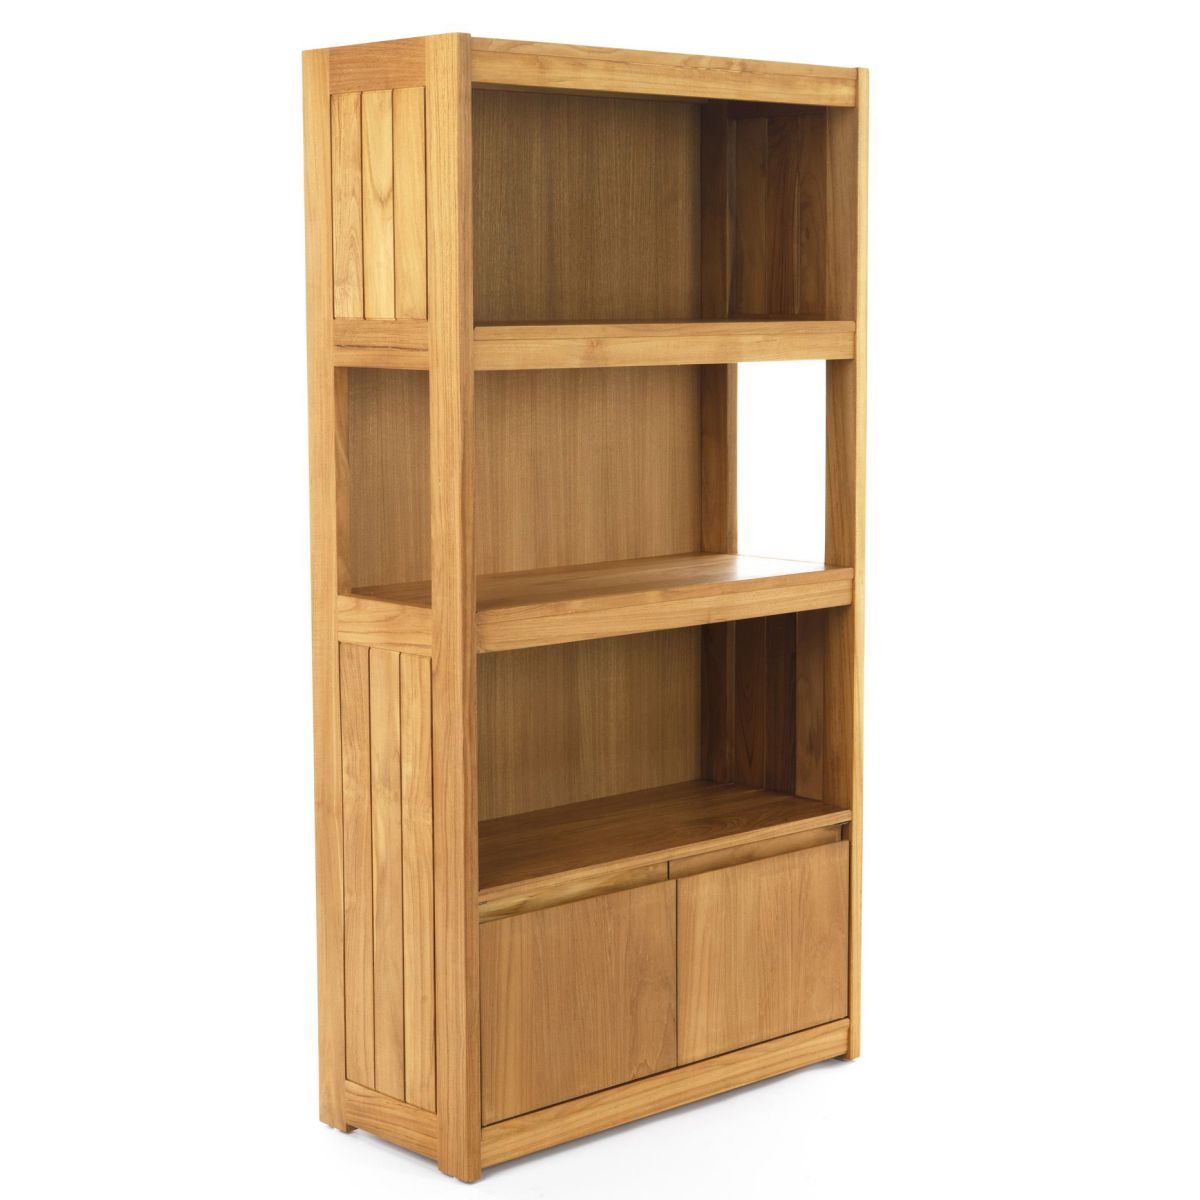 Teak Wood Book Shelf With 2 Doors